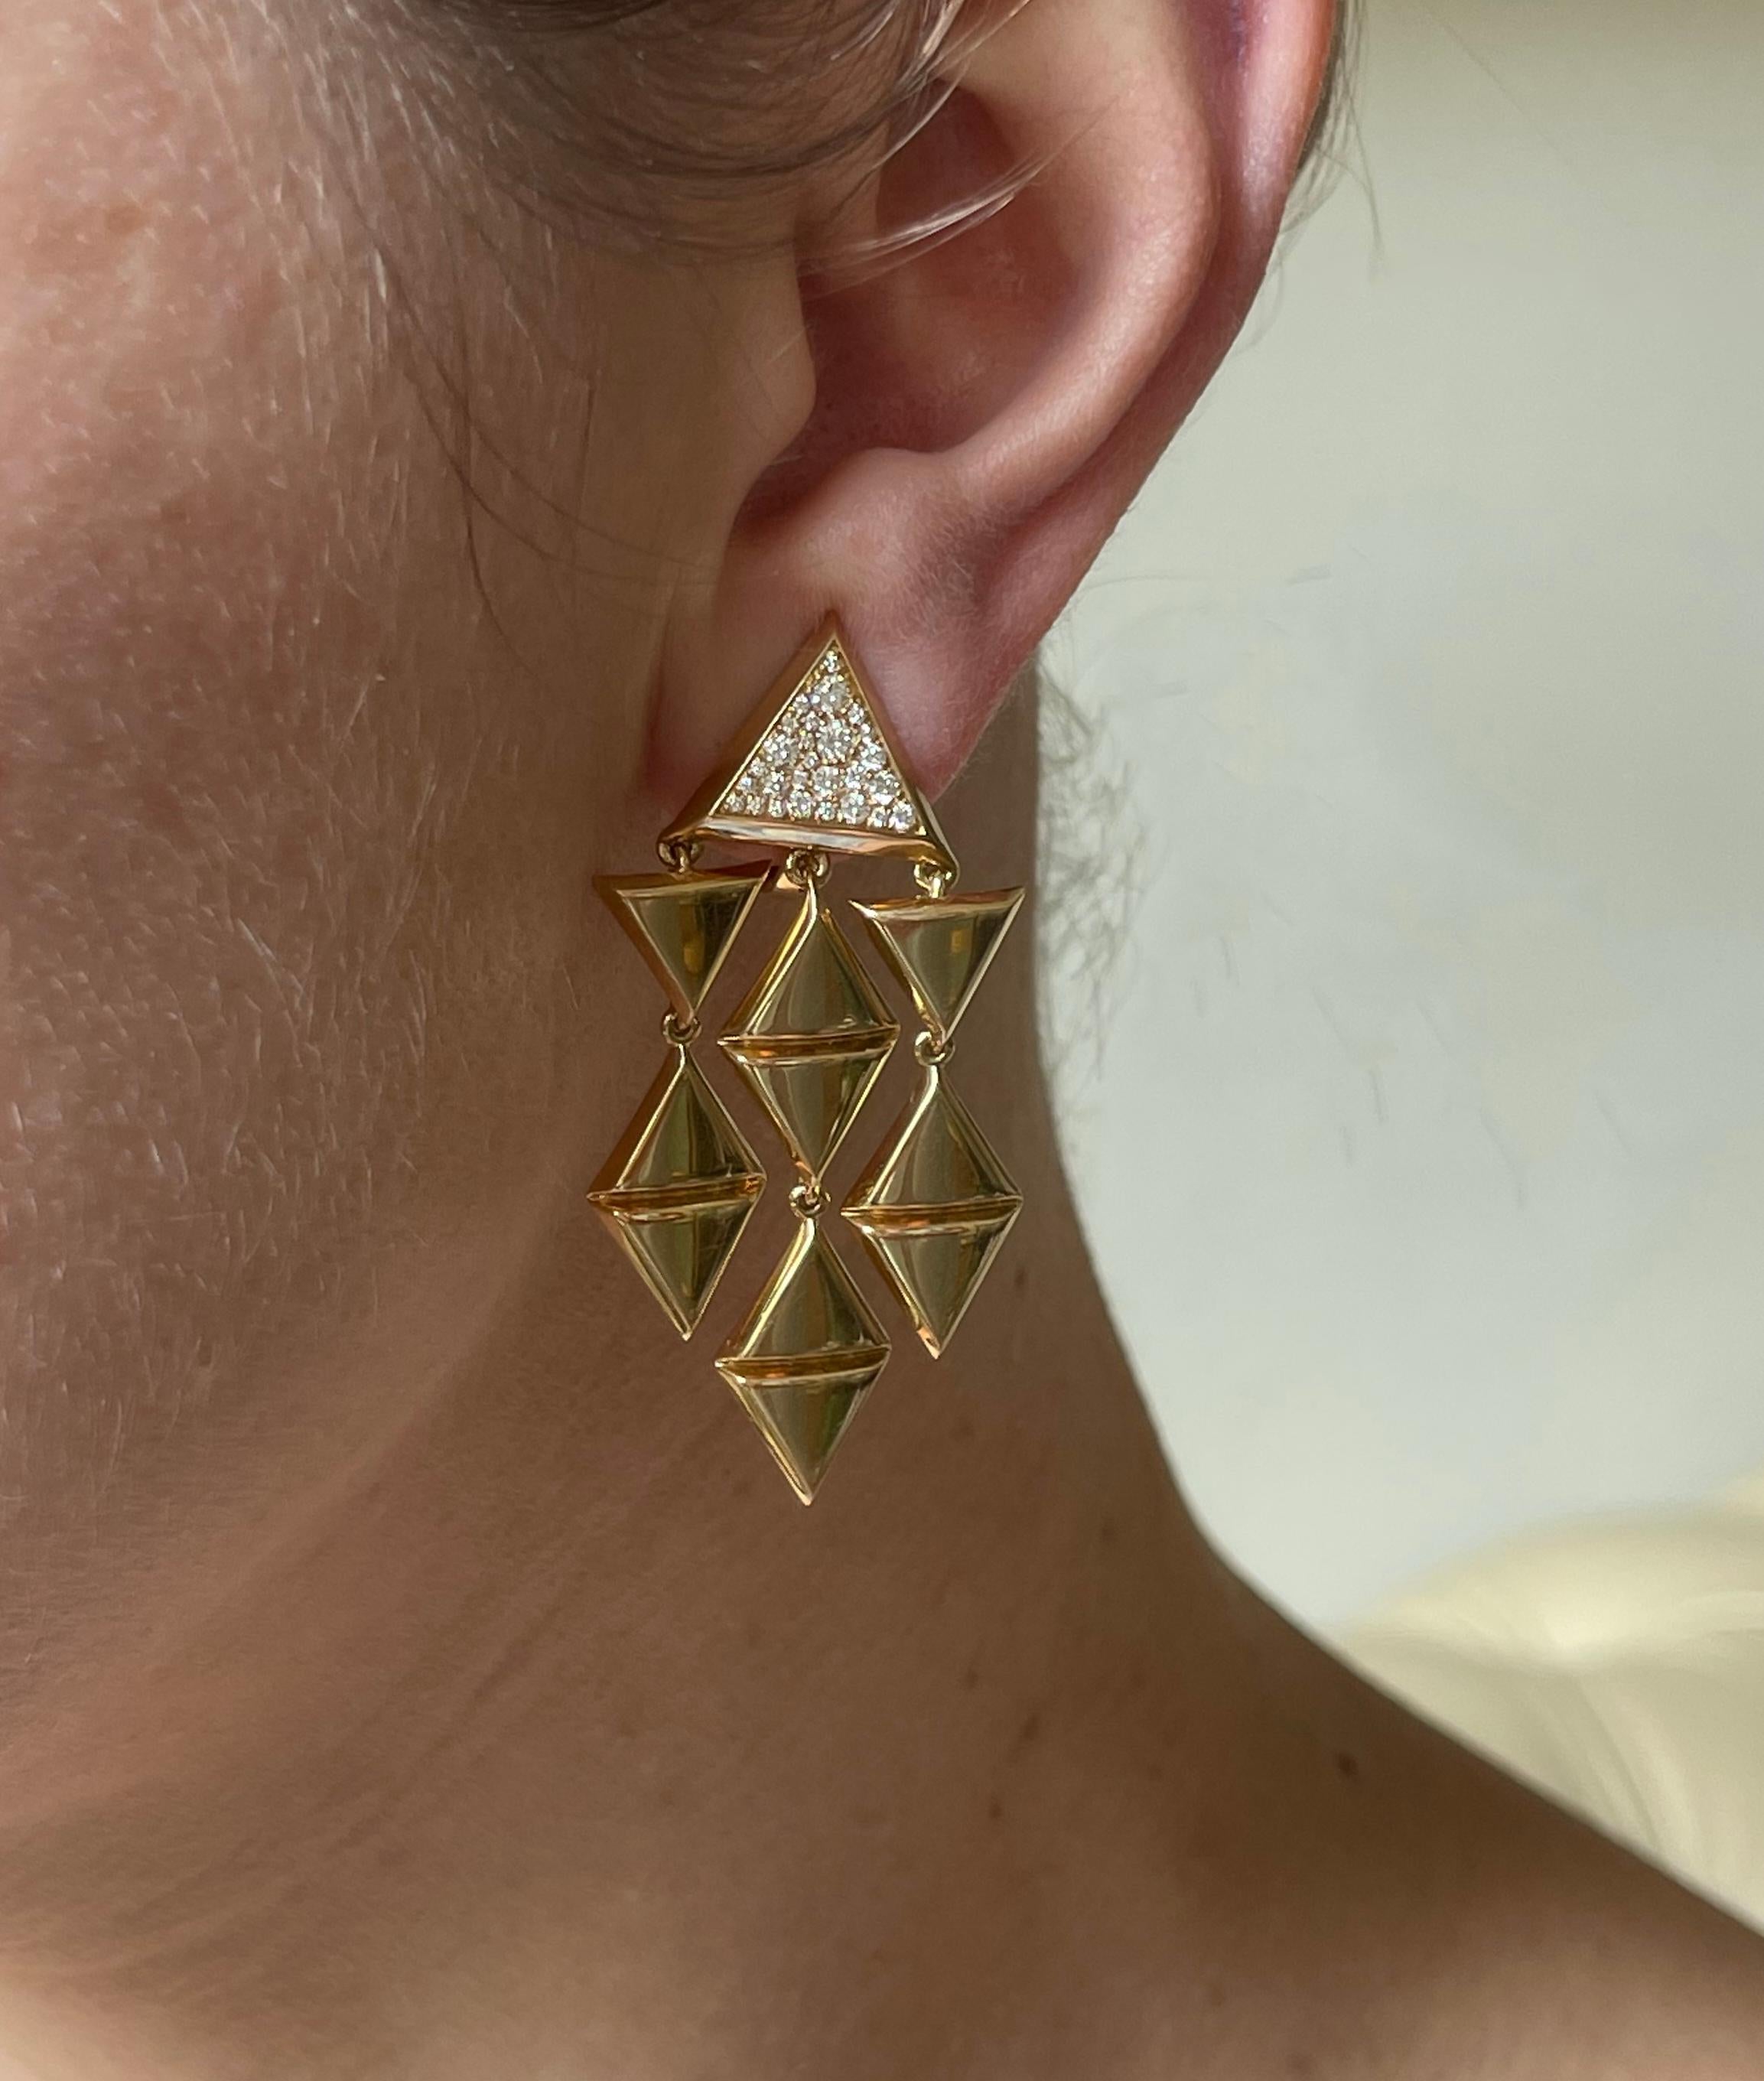 Paar Kronleuchter-Ohrringe aus 18 Karat Gold von Marina B., verziert mit ca. 0,60ctw G.VS Diamant. Die Ohrringe messen 2 1/8